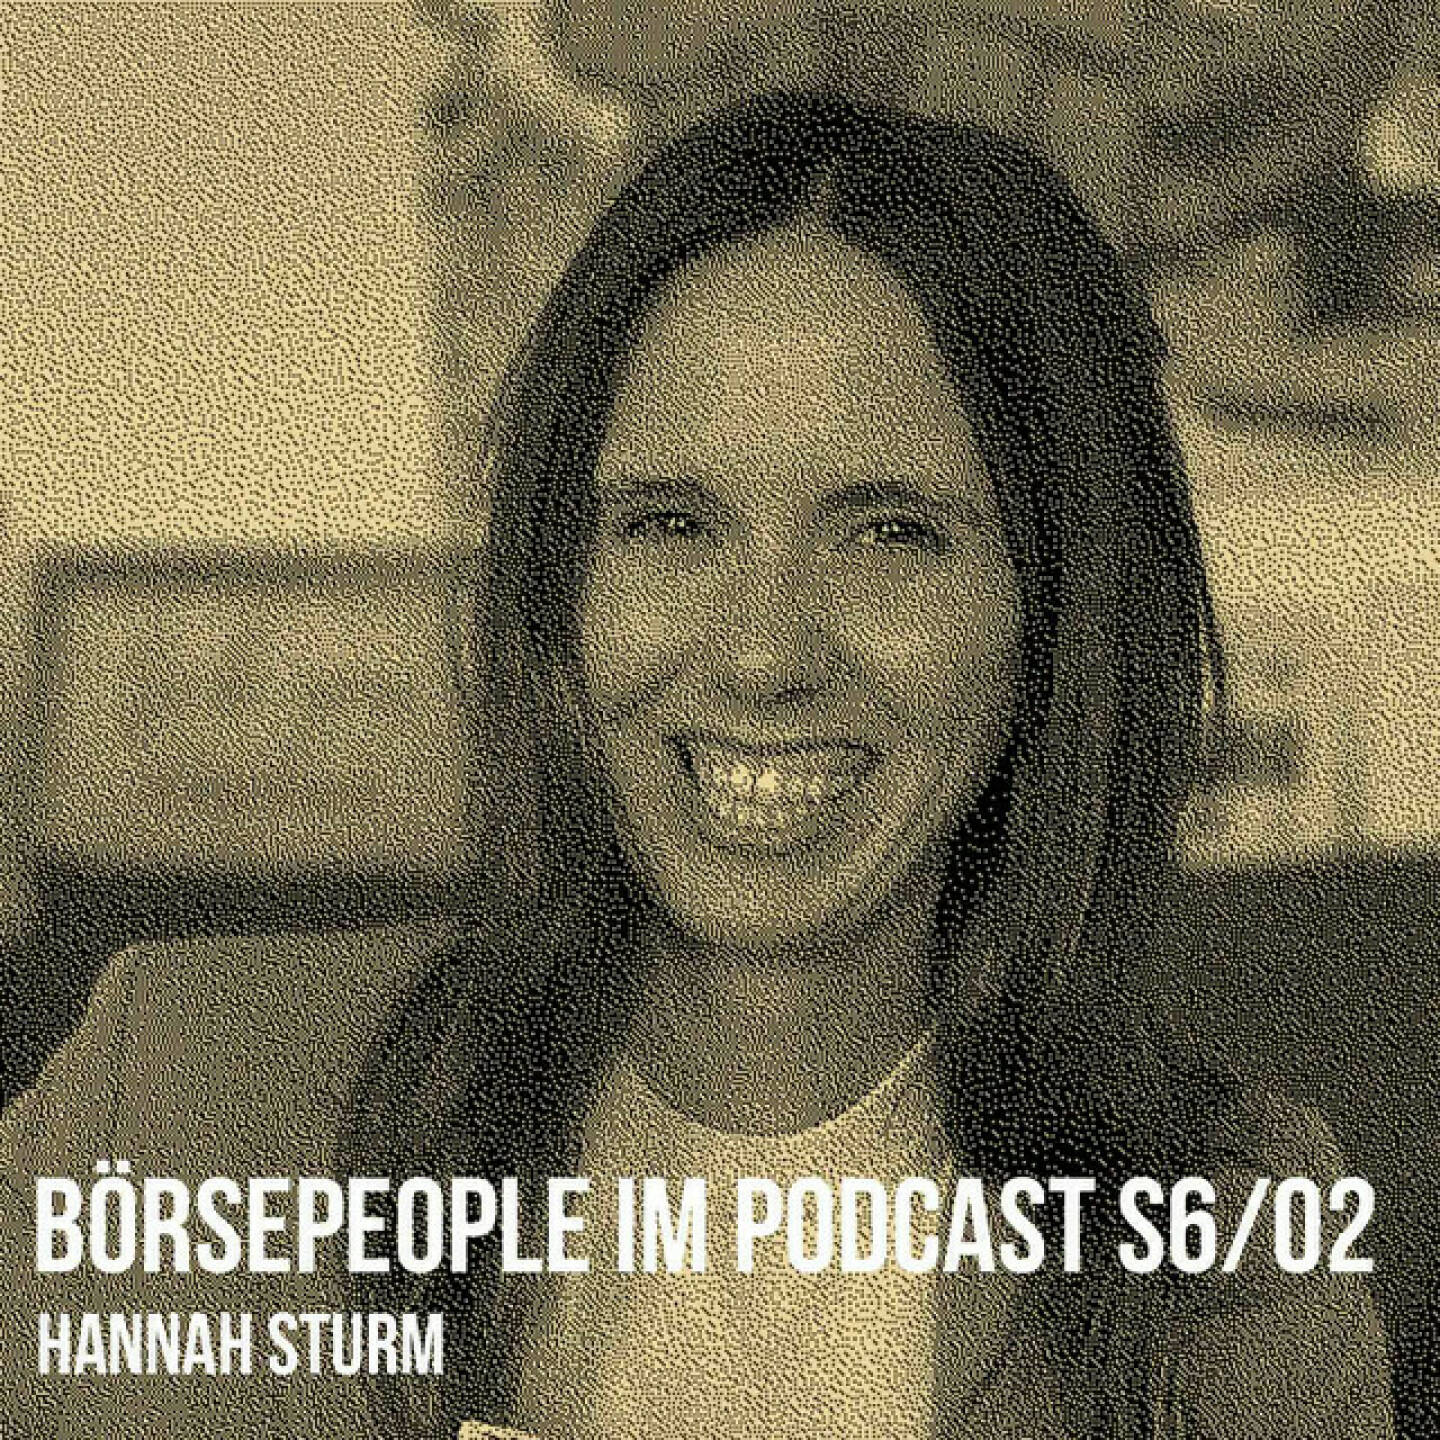 https://open.spotify.com/episode/1Gap4arAScFNPaQU1BMwDW
Börsepeople im Podcast S6/02: Hannah Sturm - <p>Hannah Sturm ist Organisationsberaterin und auf New Work spezialisiert, die Pikestorm-Gründerin war davor bei Startups (Stichwort: Austrian Startups) und dem Fintech Conda tätig. Wir sprechen über den Generationen-Mix, EU-Programme und reihen Begriffe wie Fuck Up Nights, Scrum, Kanban, OKRs und Wasserfall ein, dazu leiten wir Pikestorm her und sprechen darüber, wie Konzerne die Leute wieder aus dem Home Office bekommen. Und: Am Ende gab es einen Plauderlauf als Revival, denn bei meinem allerersten Business-Plauderlauf war Hannah vor 7 Jahren dabei.<br/><br/><a href=https://pikestorm.at target=_blank>https://pikestorm.at</a><br/><br/>Remembering 1st Plauderlauf mit Hannah Sturm, Karin Turki und Paul Pöltner im Februar 2016: <a href=https://runplugged.com/2016/02/18/laufworkshop_mit_conda_christian_drastil_via_runplugged_runkit target=_blank>https://runplugged.com/2016/02/18/laufworkshop_mit_conda_christian_drastil_via_runplugged_runkit</a><br/><br/>Plauderlauf mit Hannah 2023: <a href=https://photaq.com/page/pic/94459 target=_blank>https://photaq.com/page/pic/94459</a><br/><br/>About: Die Serie Börsepeople findet im Rahmen von <a href=http://www.audio-cd.at target=_blank>http://www.audio-cd.at</a> und dem Podcast &#34;Audio-CD.at Indie Podcasts&#34; statt. Es handelt sich dabei um typische Personality- und Werdegang-Gespräche. Die Season 6 umfasst unter dem Motto „23 Börsepeople“ wieder 23 Talks  Presenter der Season 6 ist saisongerecht 6b47, <a href=https://6b47.com/de/home target=_blank>https://6b47.com/de/home</a> . Welcher der meistgehörte Börsepeople Podcast ist, sieht man unter <a href=http://www.audio-cd.at/people target=_blank>http://www.audio-cd.at/people.</a> Nach den ersten drei Seasons führte Thomas Tschol und gewann dafür einen Number One Award für 2022. Der Zwischenstand des laufenden Rankings ist tagesaktuell um 12 Uhr aktualisiert.<br/><br/>Bewertungen bei Apple (oder auch Spotify) machen mir Freude: <a href=https://podcasts.apple.com/at/podcast/audio-cd-at-indie-podcasts-wiener-boerse-sport-musik-und-mehr/id1484919130 target=_blank>https://podcasts.apple.com/at/podcast/audio-cd-at-indie-podcasts-wiener-boerse-sport-musik-und-mehr/id1484919130</a> .</p>